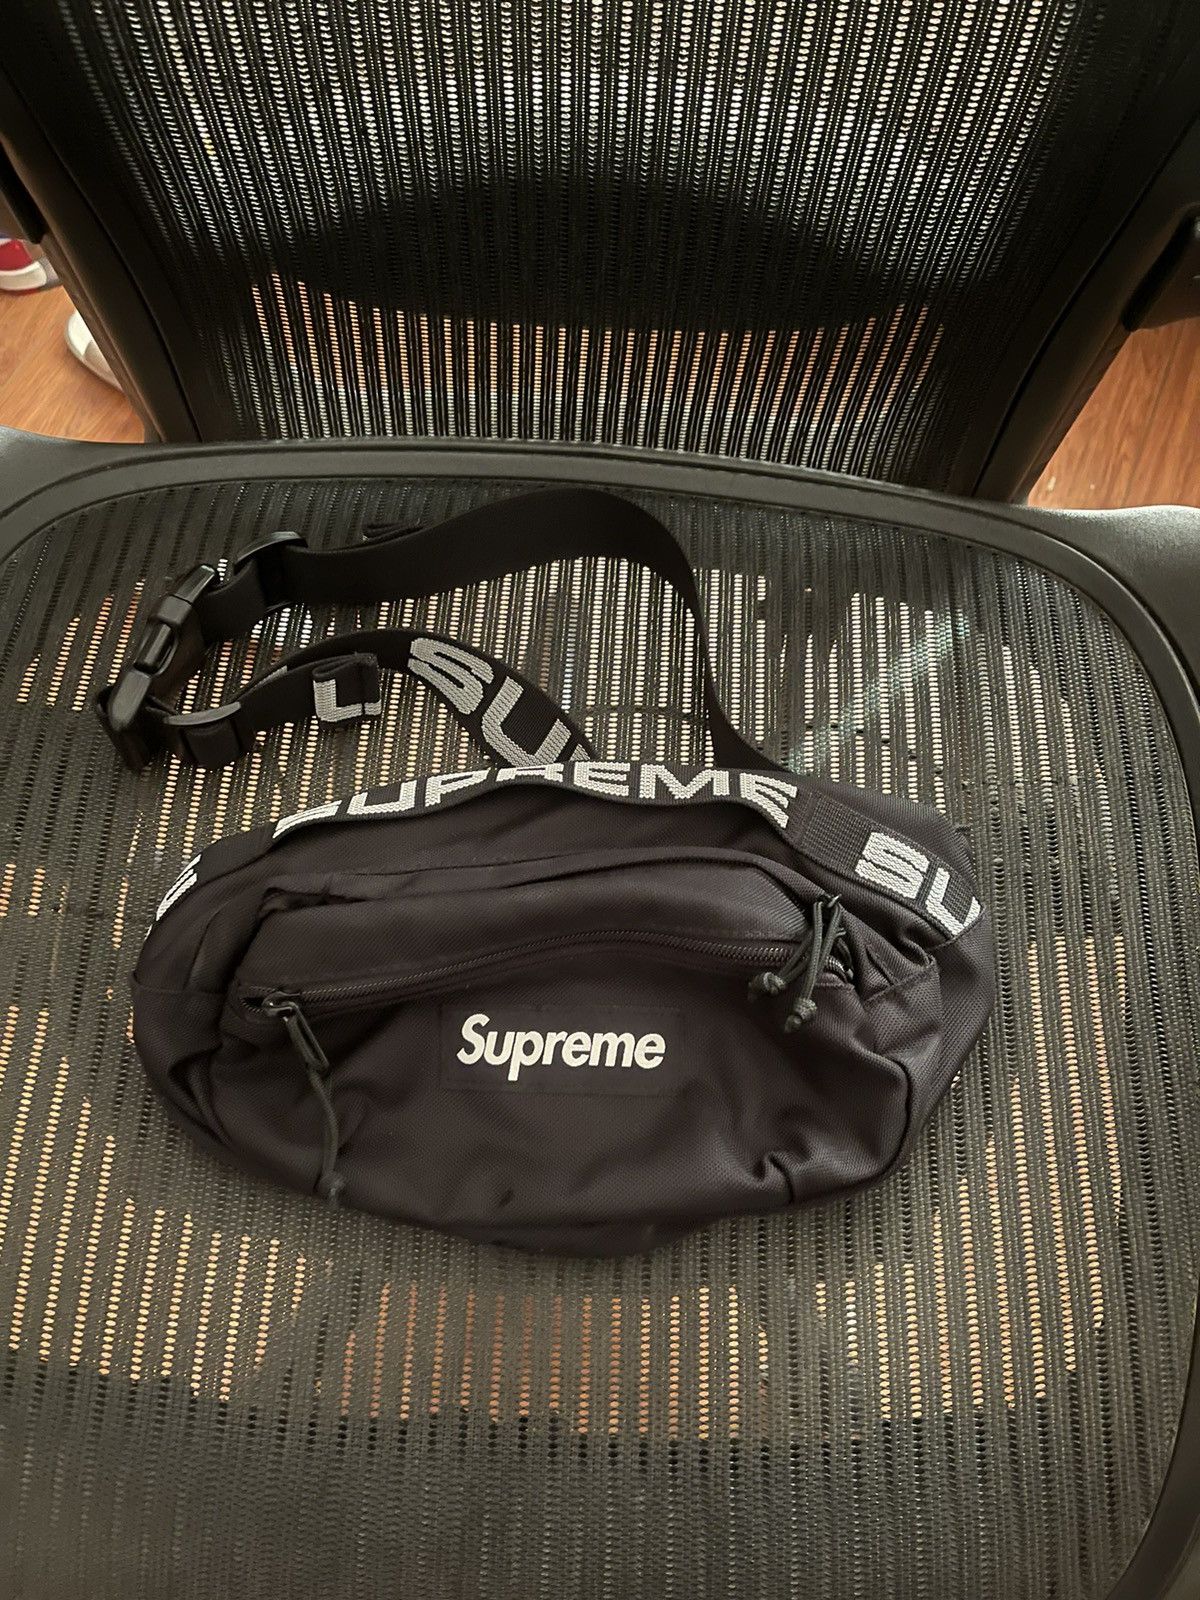 Supreme Supreme ss18 18ss 3m waist bag black | Grailed